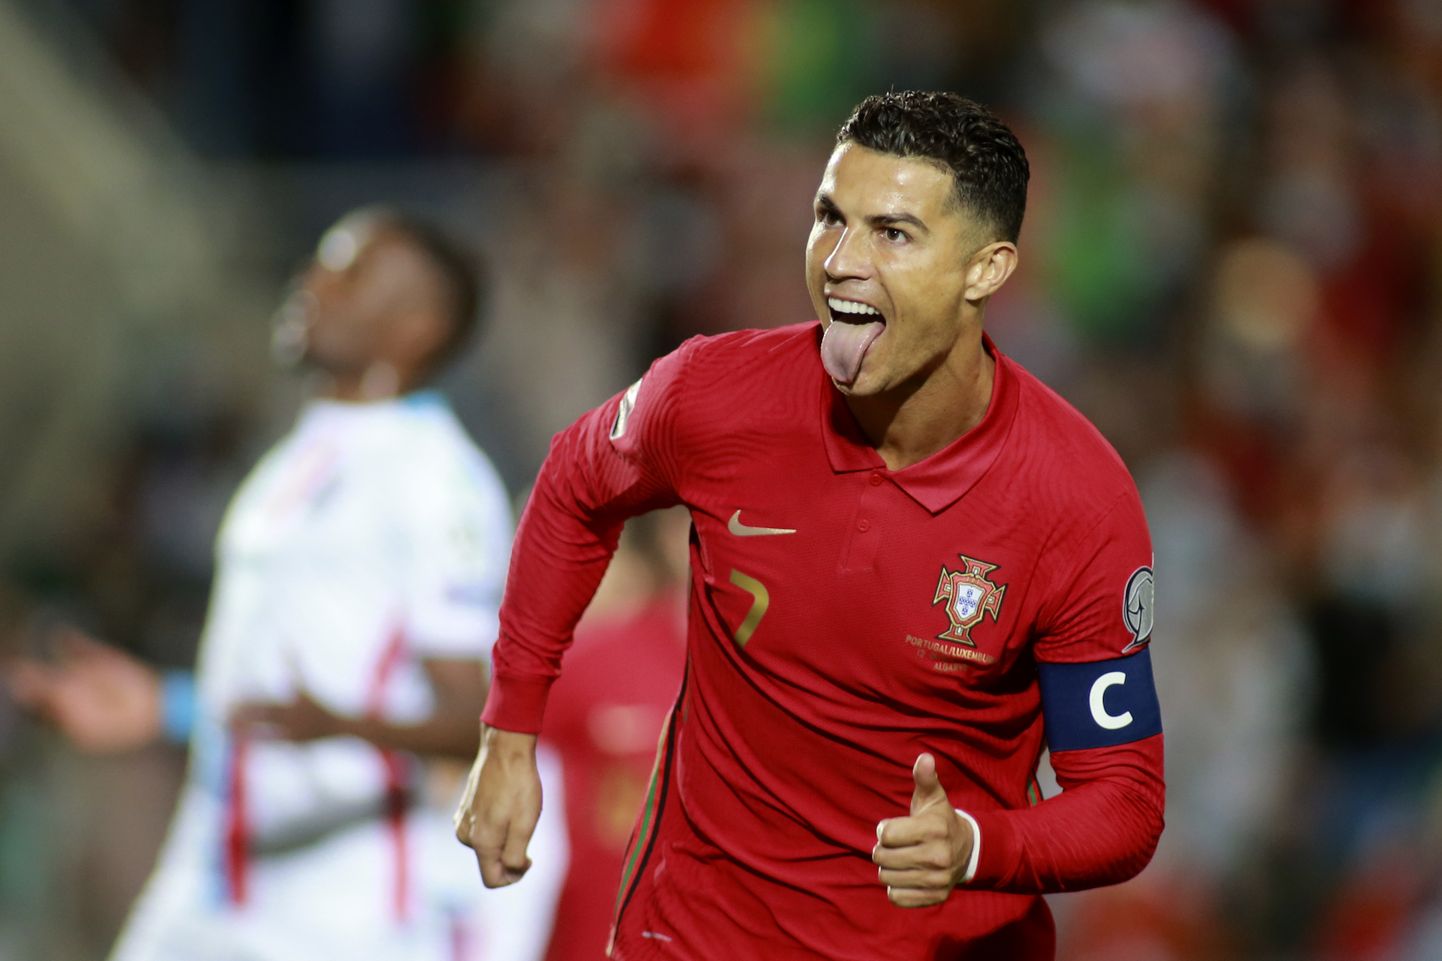 Portugali äss Cristiano Ronaldo püstitas maailmarekordi, ta on löönud rahvuskoondise eest nüüd kümme kübaratrikki!